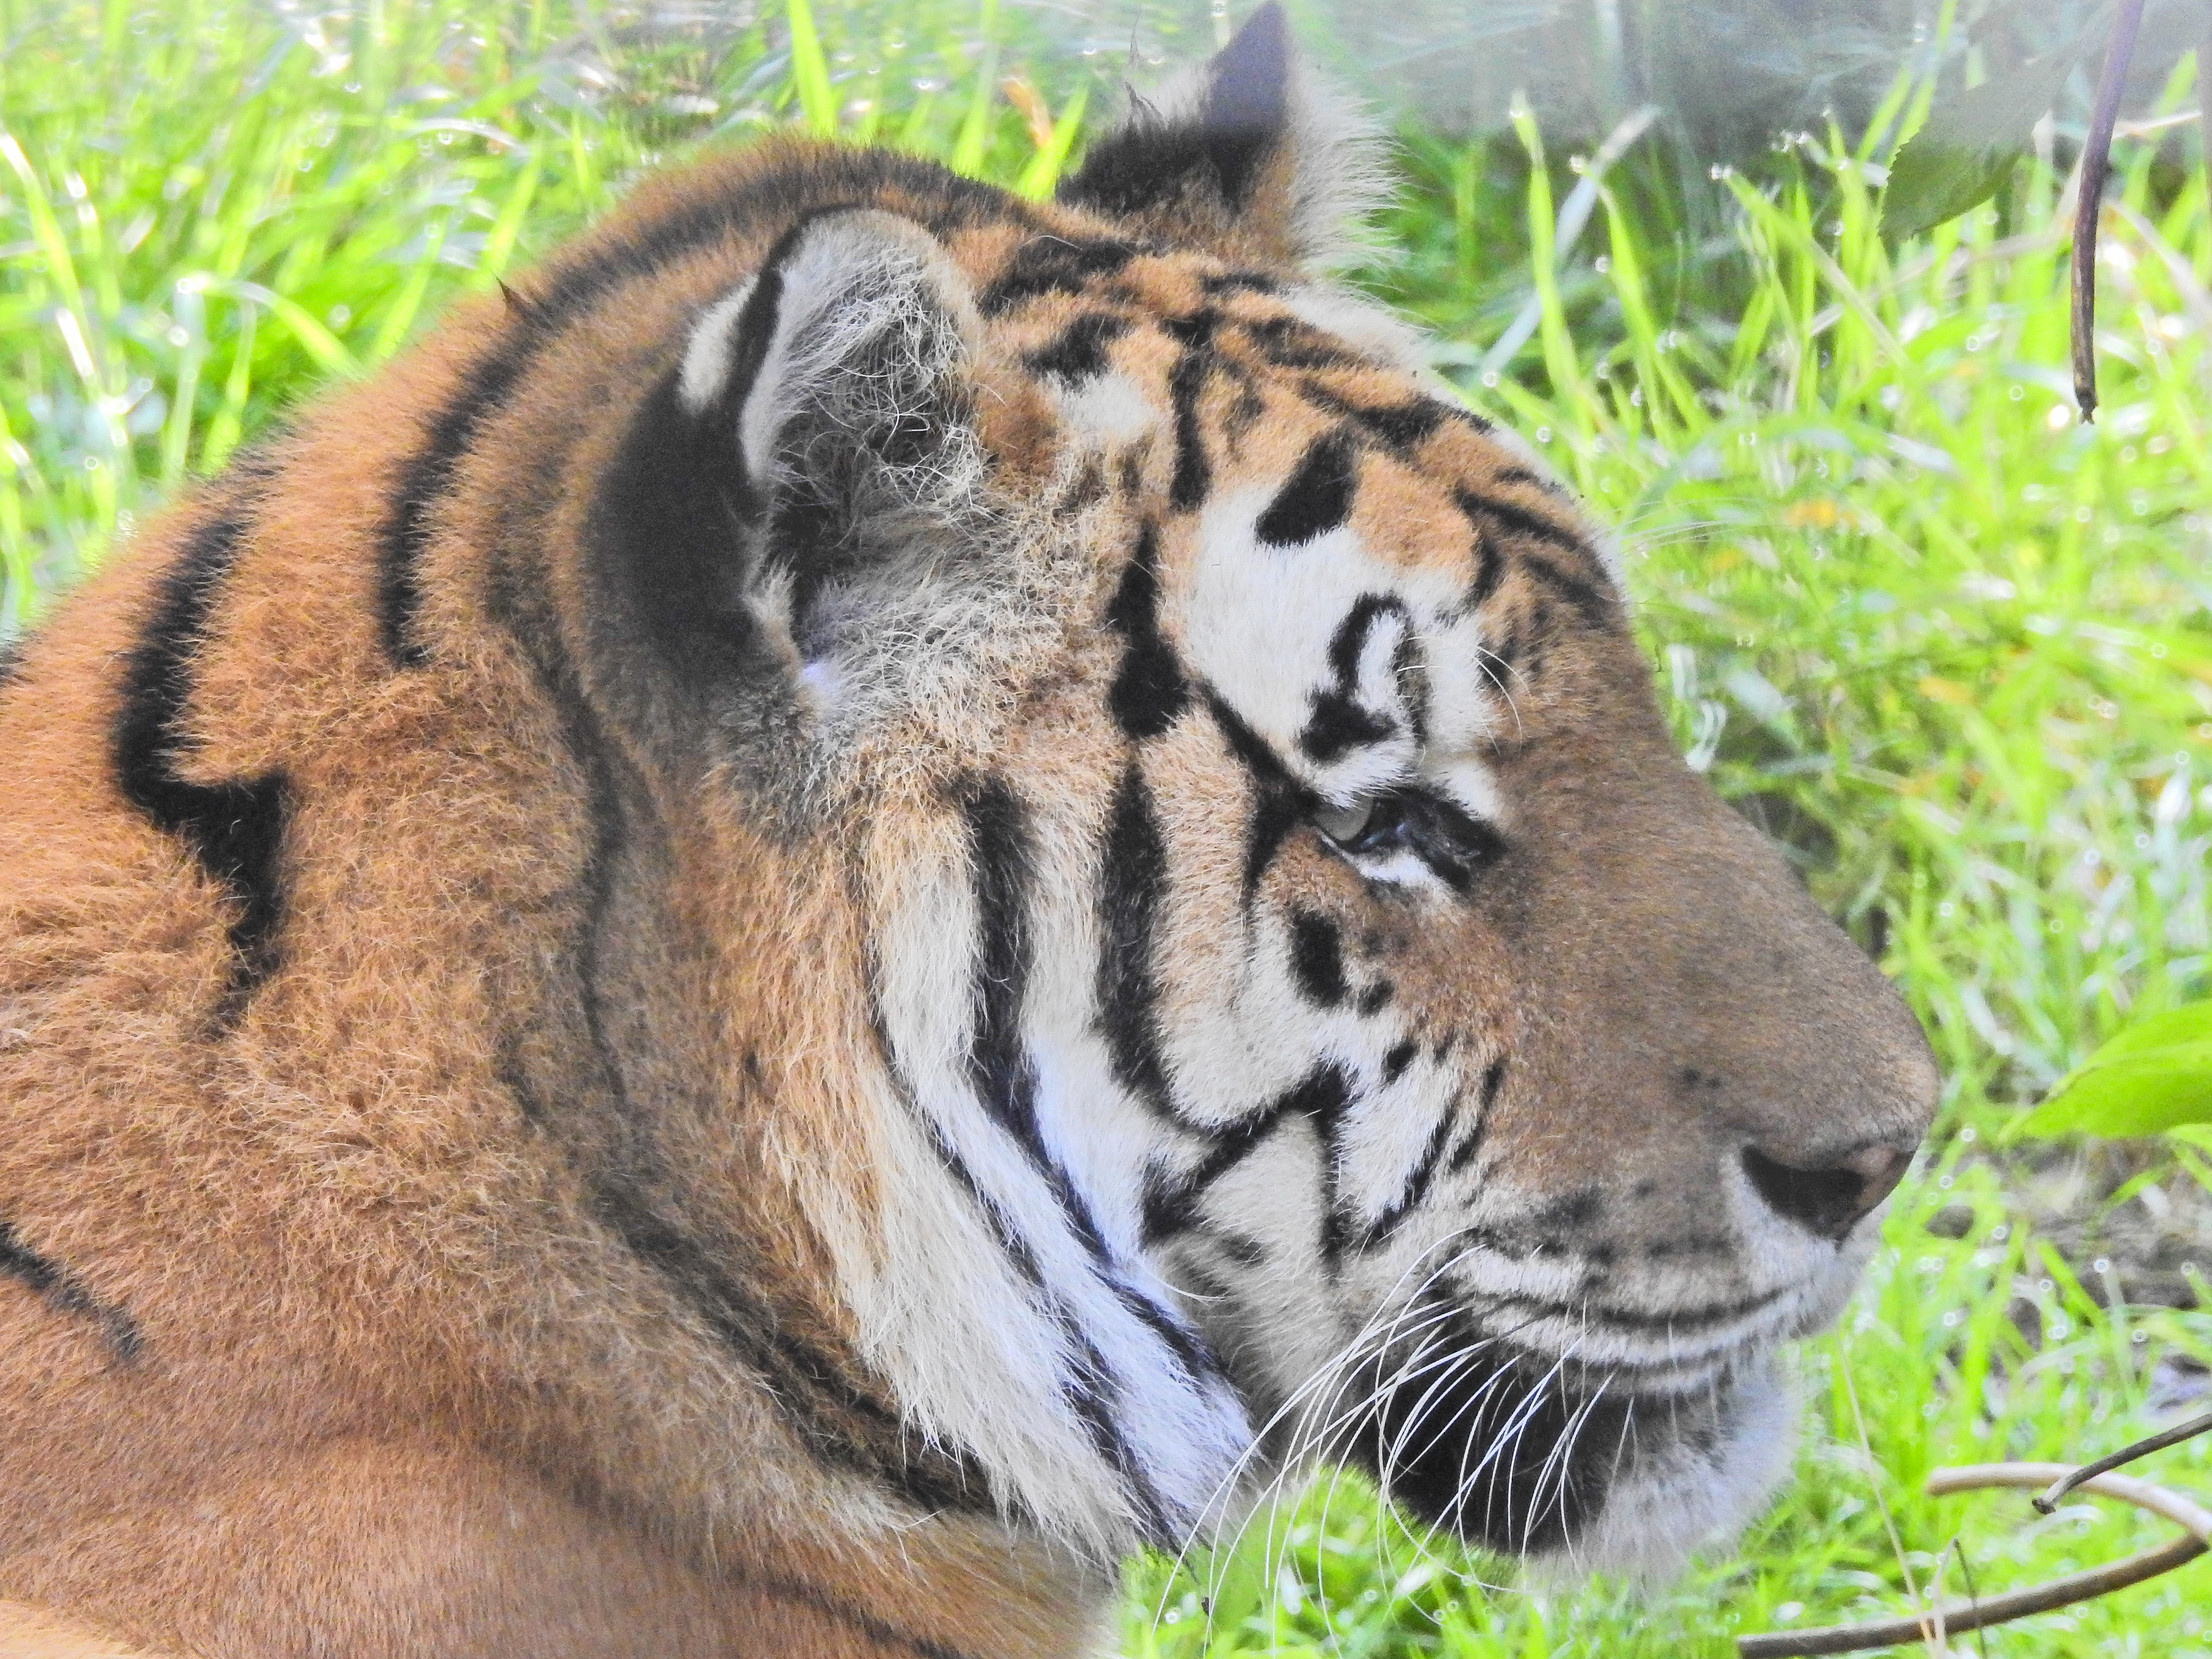 Tiger at the Alaska Zoo c. - Juno Kim